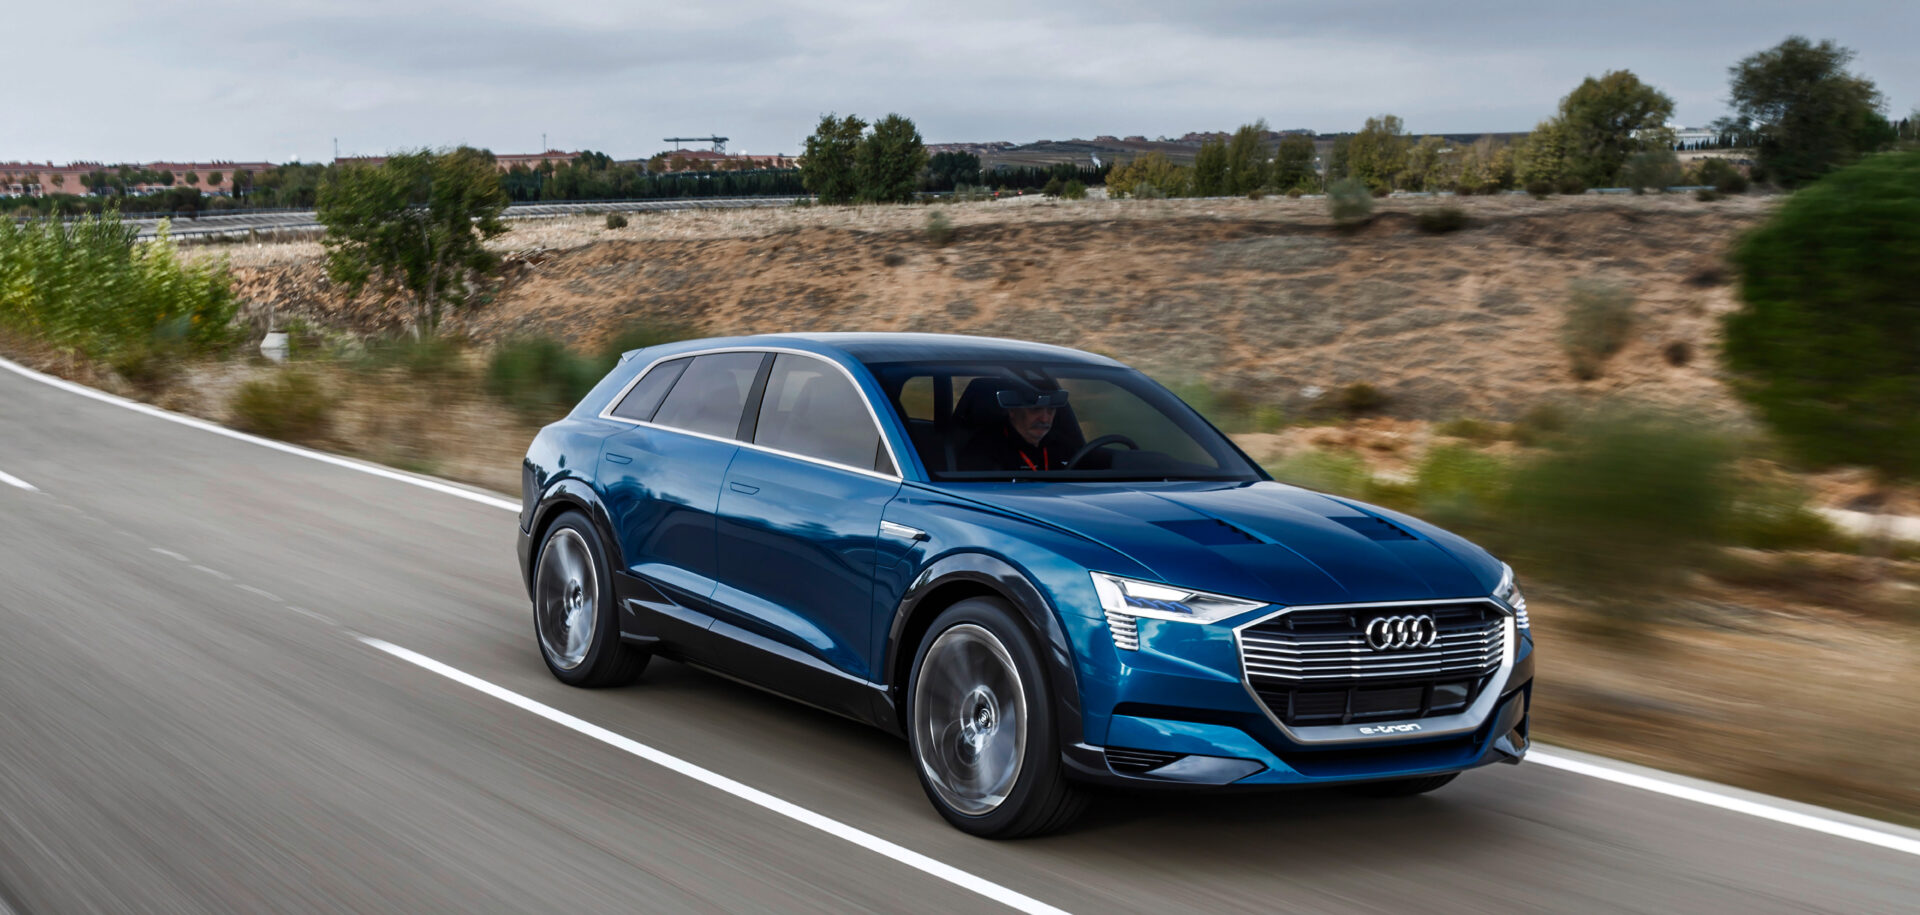 Le concept car Audi e-tron quattro